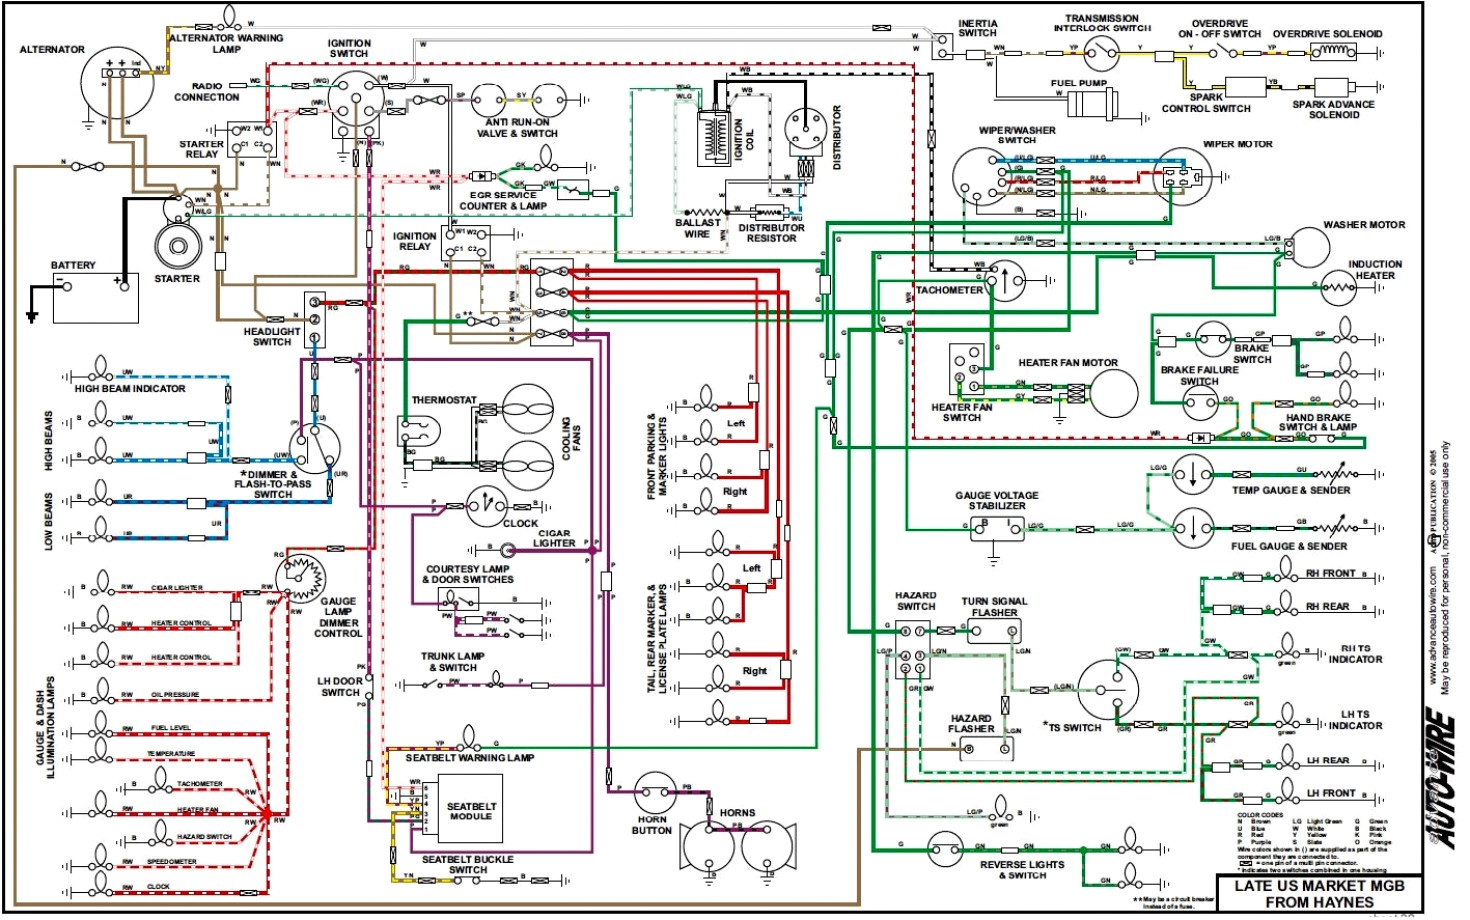 1976 mgb wiring diagram od wiring diagram post 1976 mgb wiring diagram od wiring diagram blog